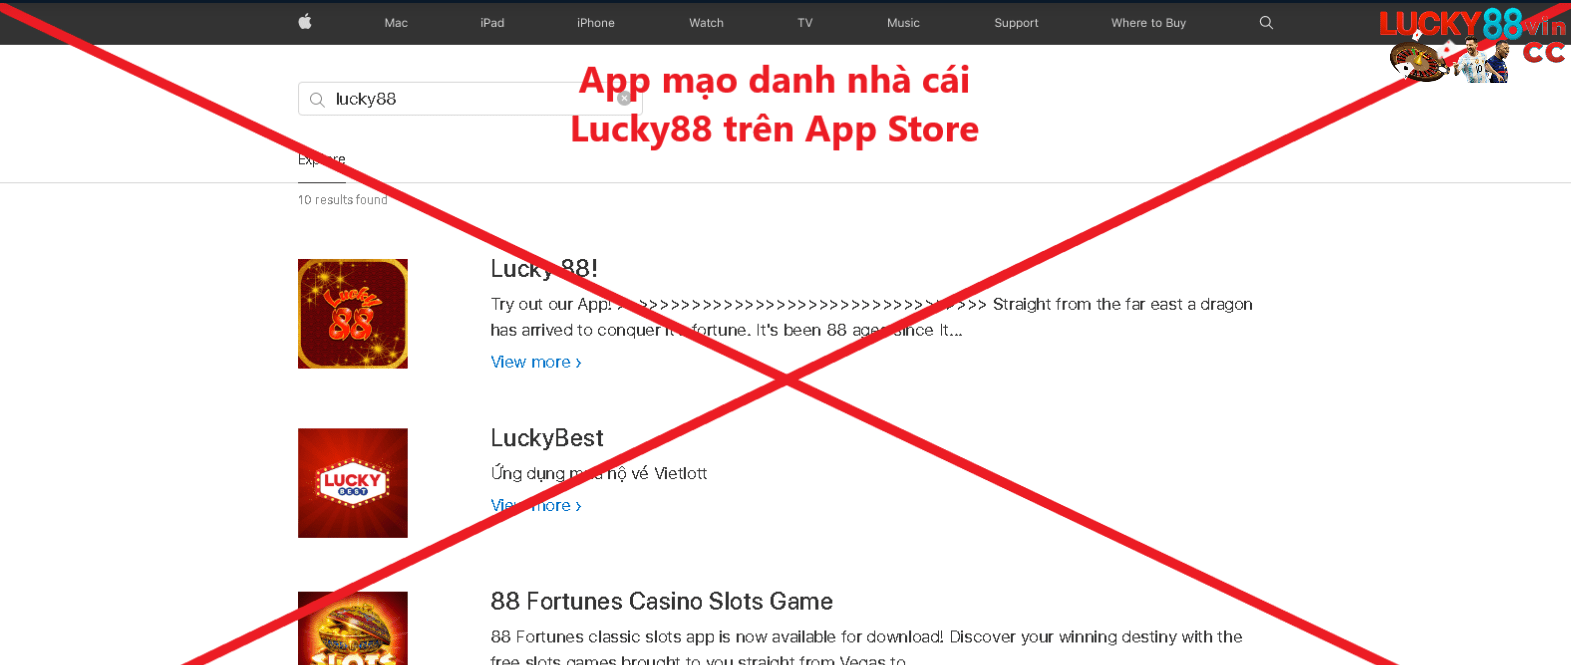 App mạo danh nhà cái Lucky88 trên App Store